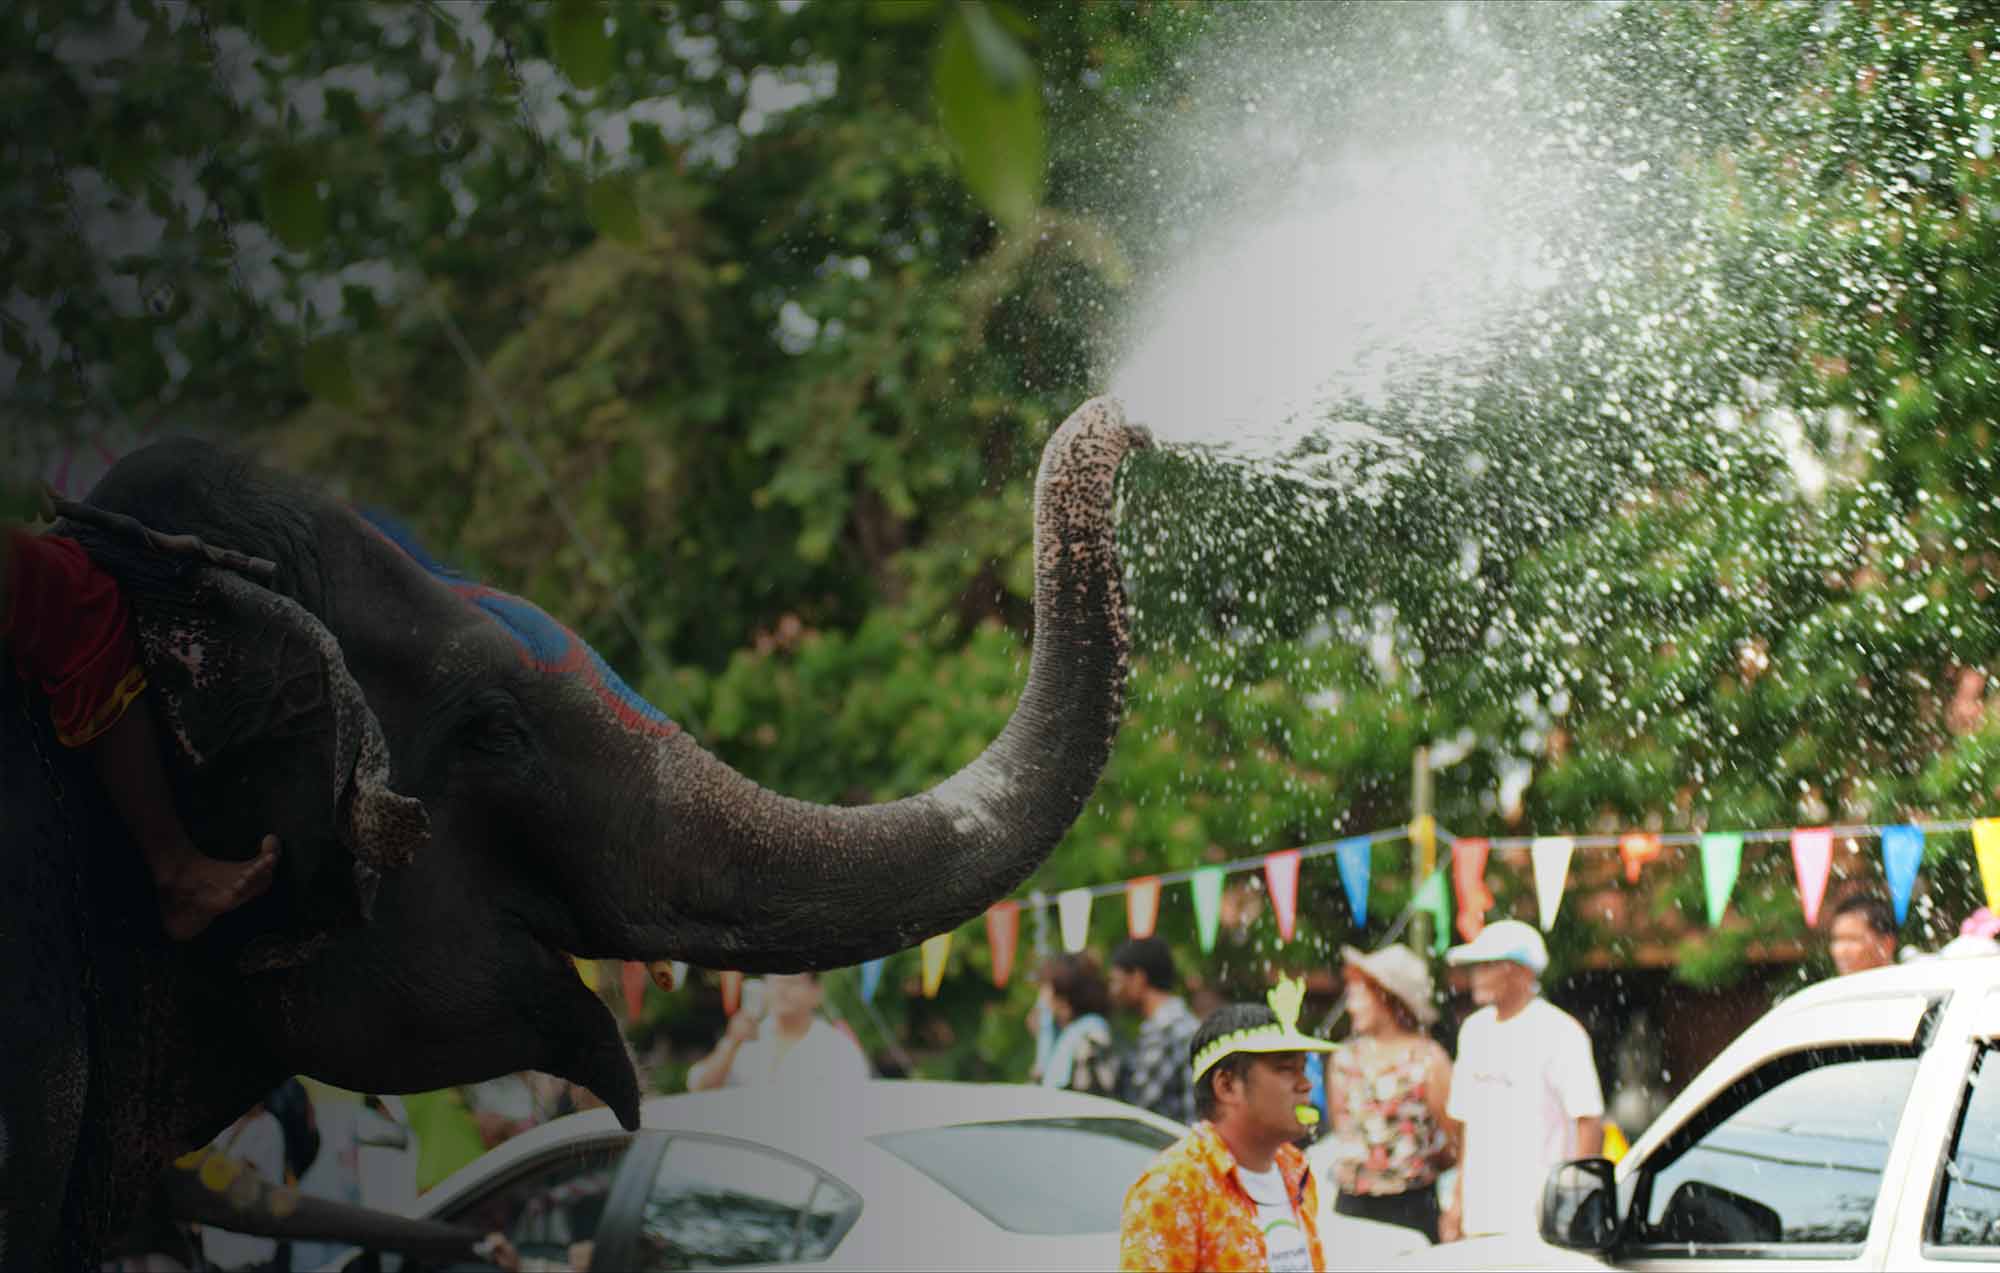 Elefant sprüht mit seinem Rüssel Wasser